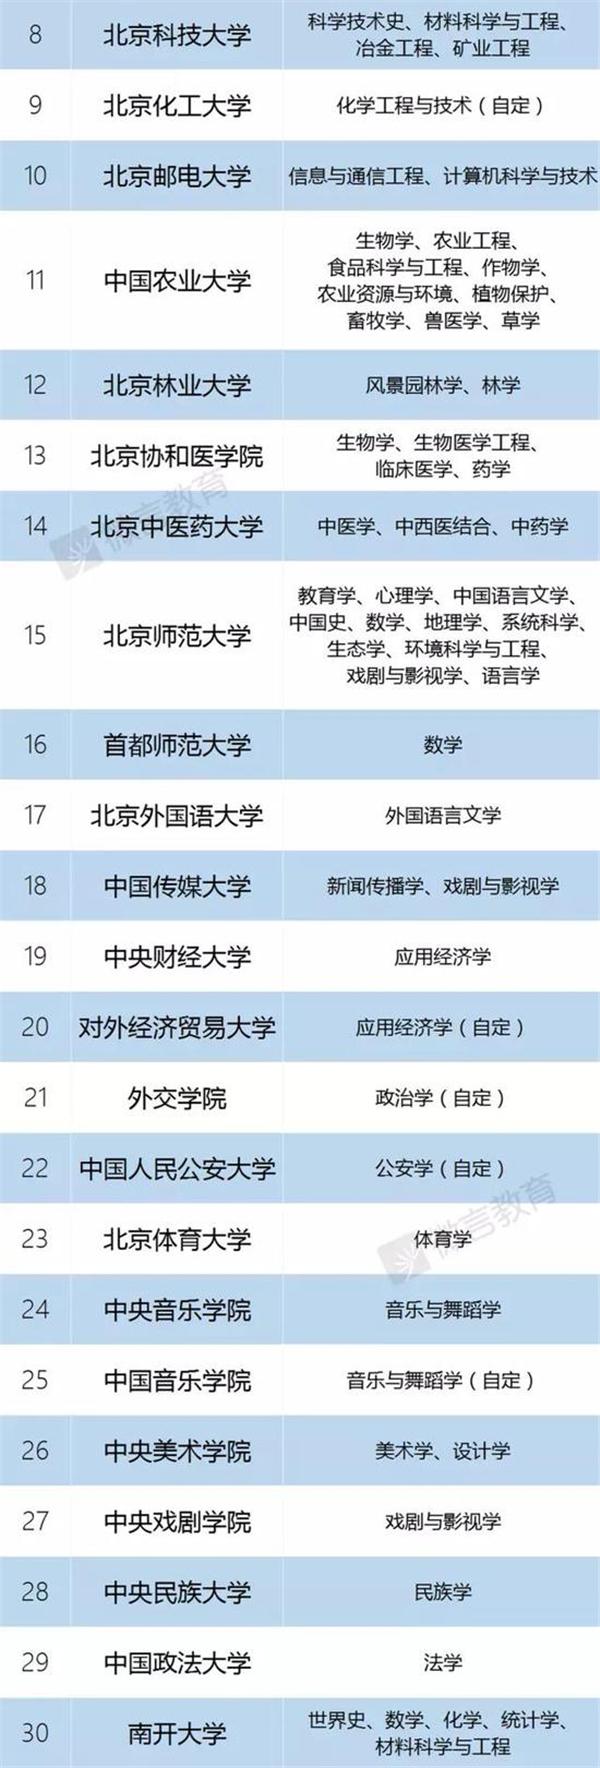 双一流建设高校名单公布 上海这些高校入围